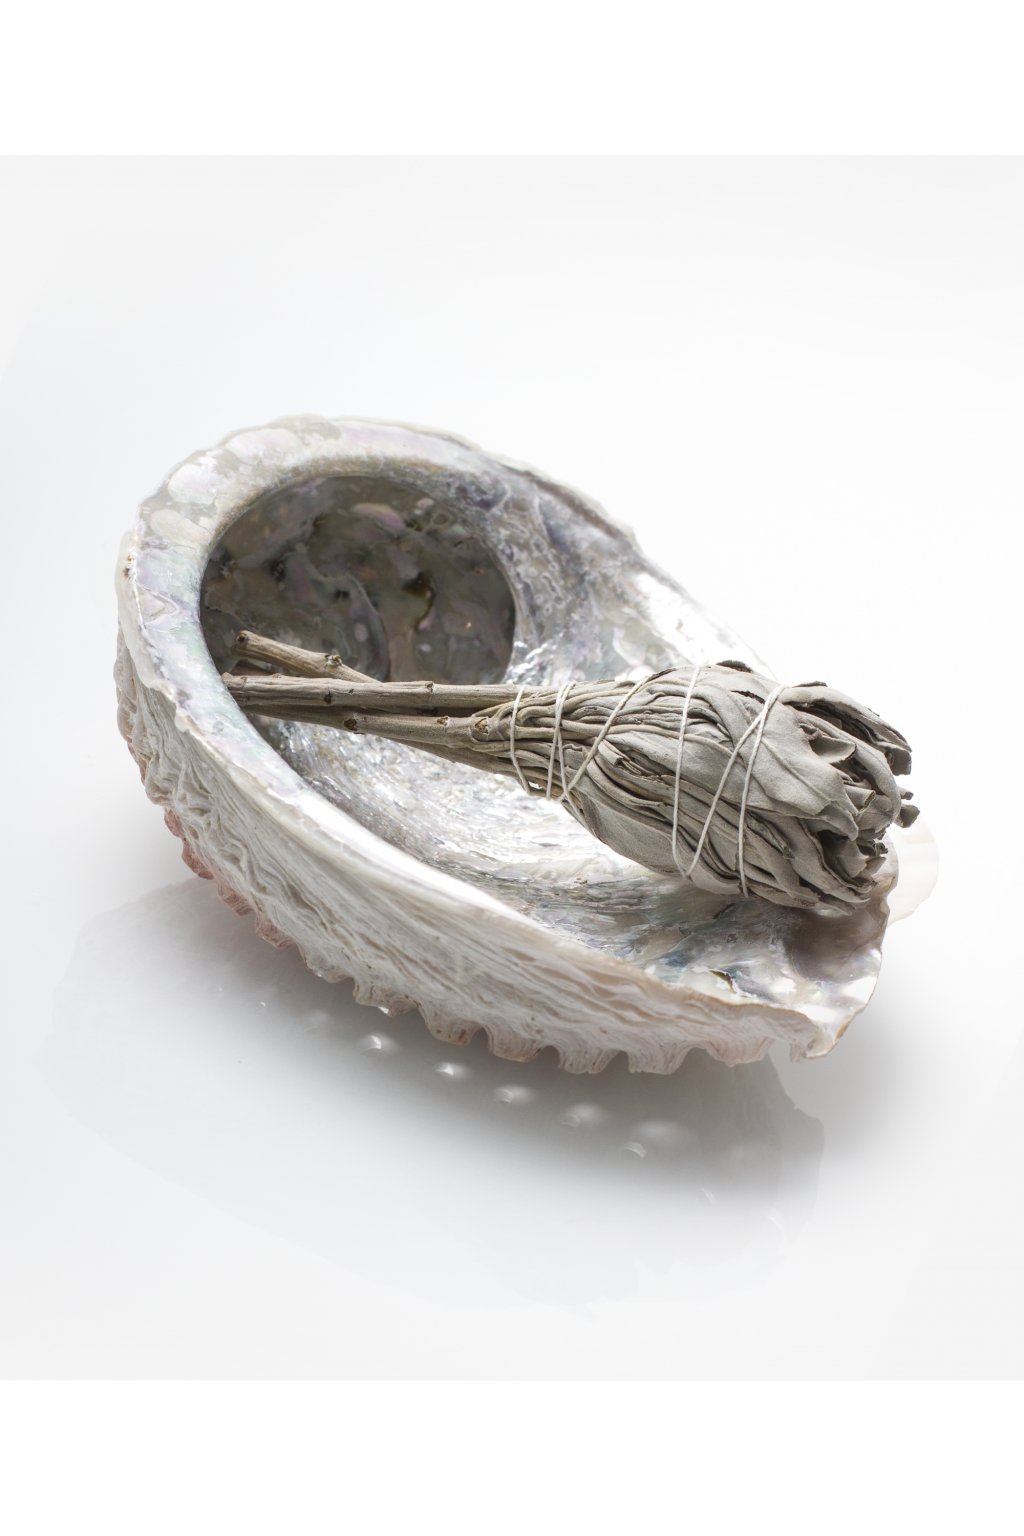 Abalone mušle - přírodní kadidelnice - střední